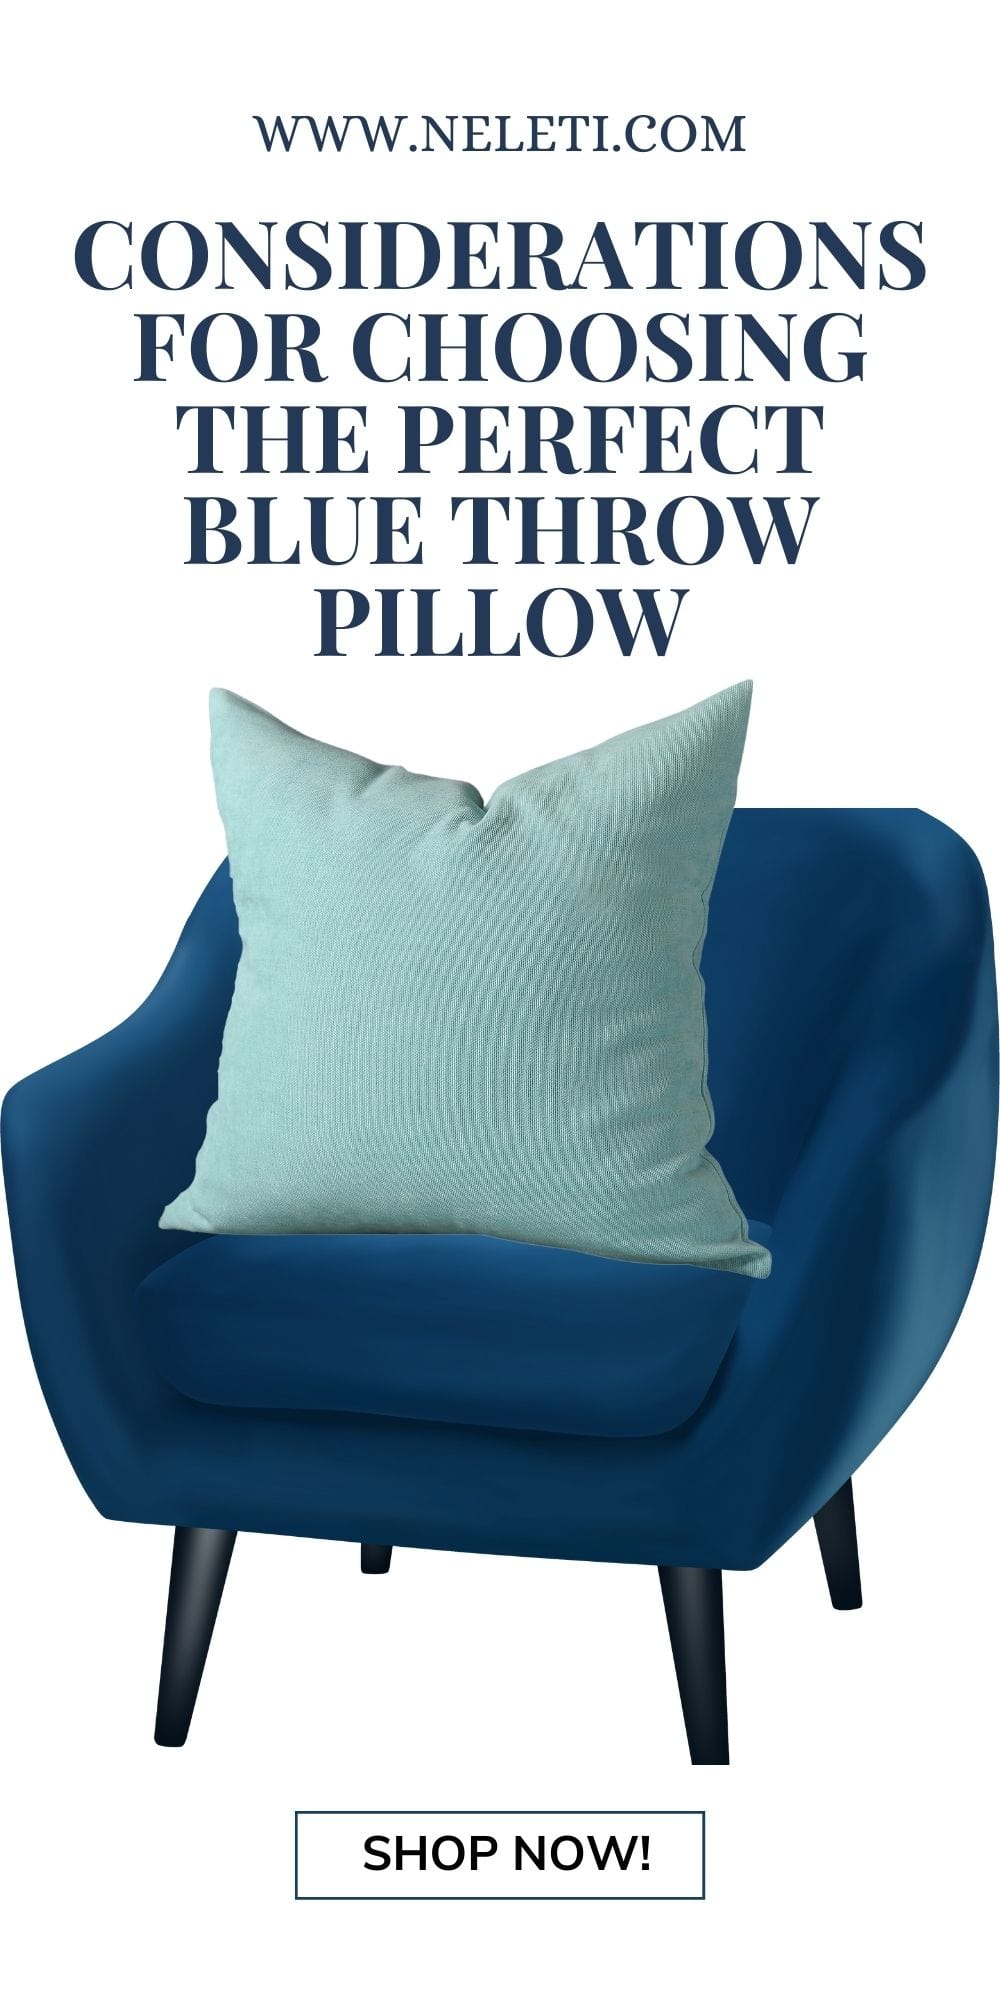 neleti.com-blue-throw-pillows